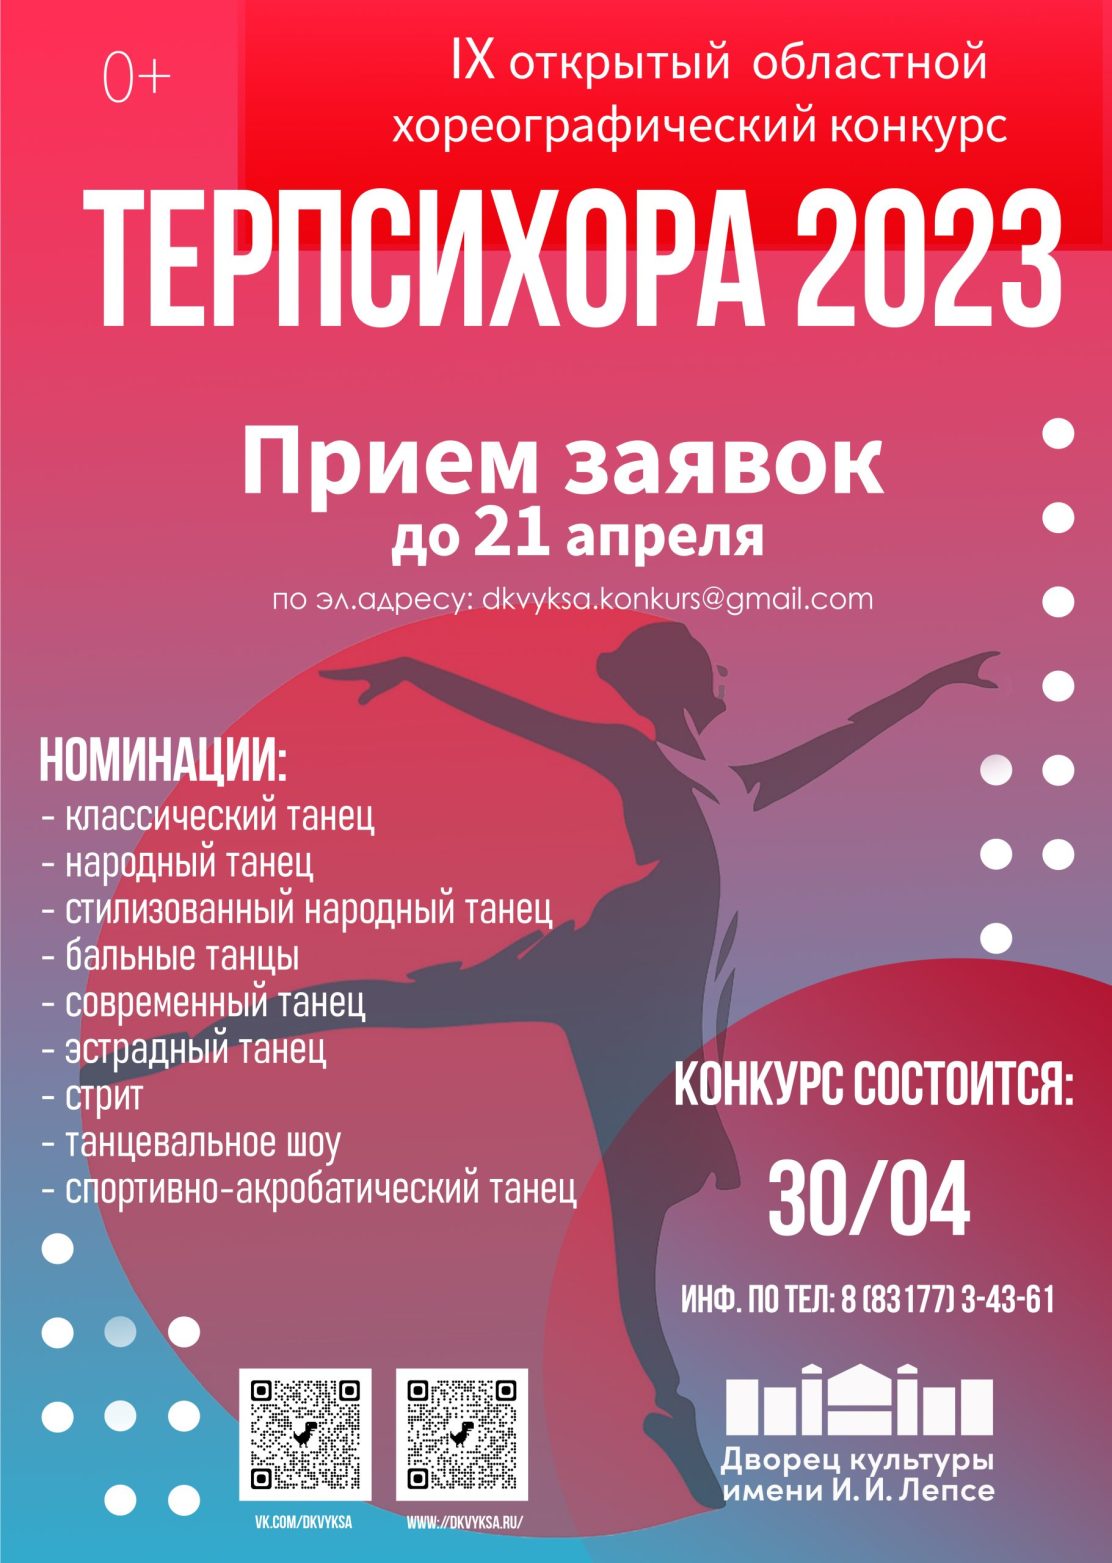 ДК Лепсе принимает заявки на участие в хореографическом конкурсе «ТЕРПСИХОРА 2023»